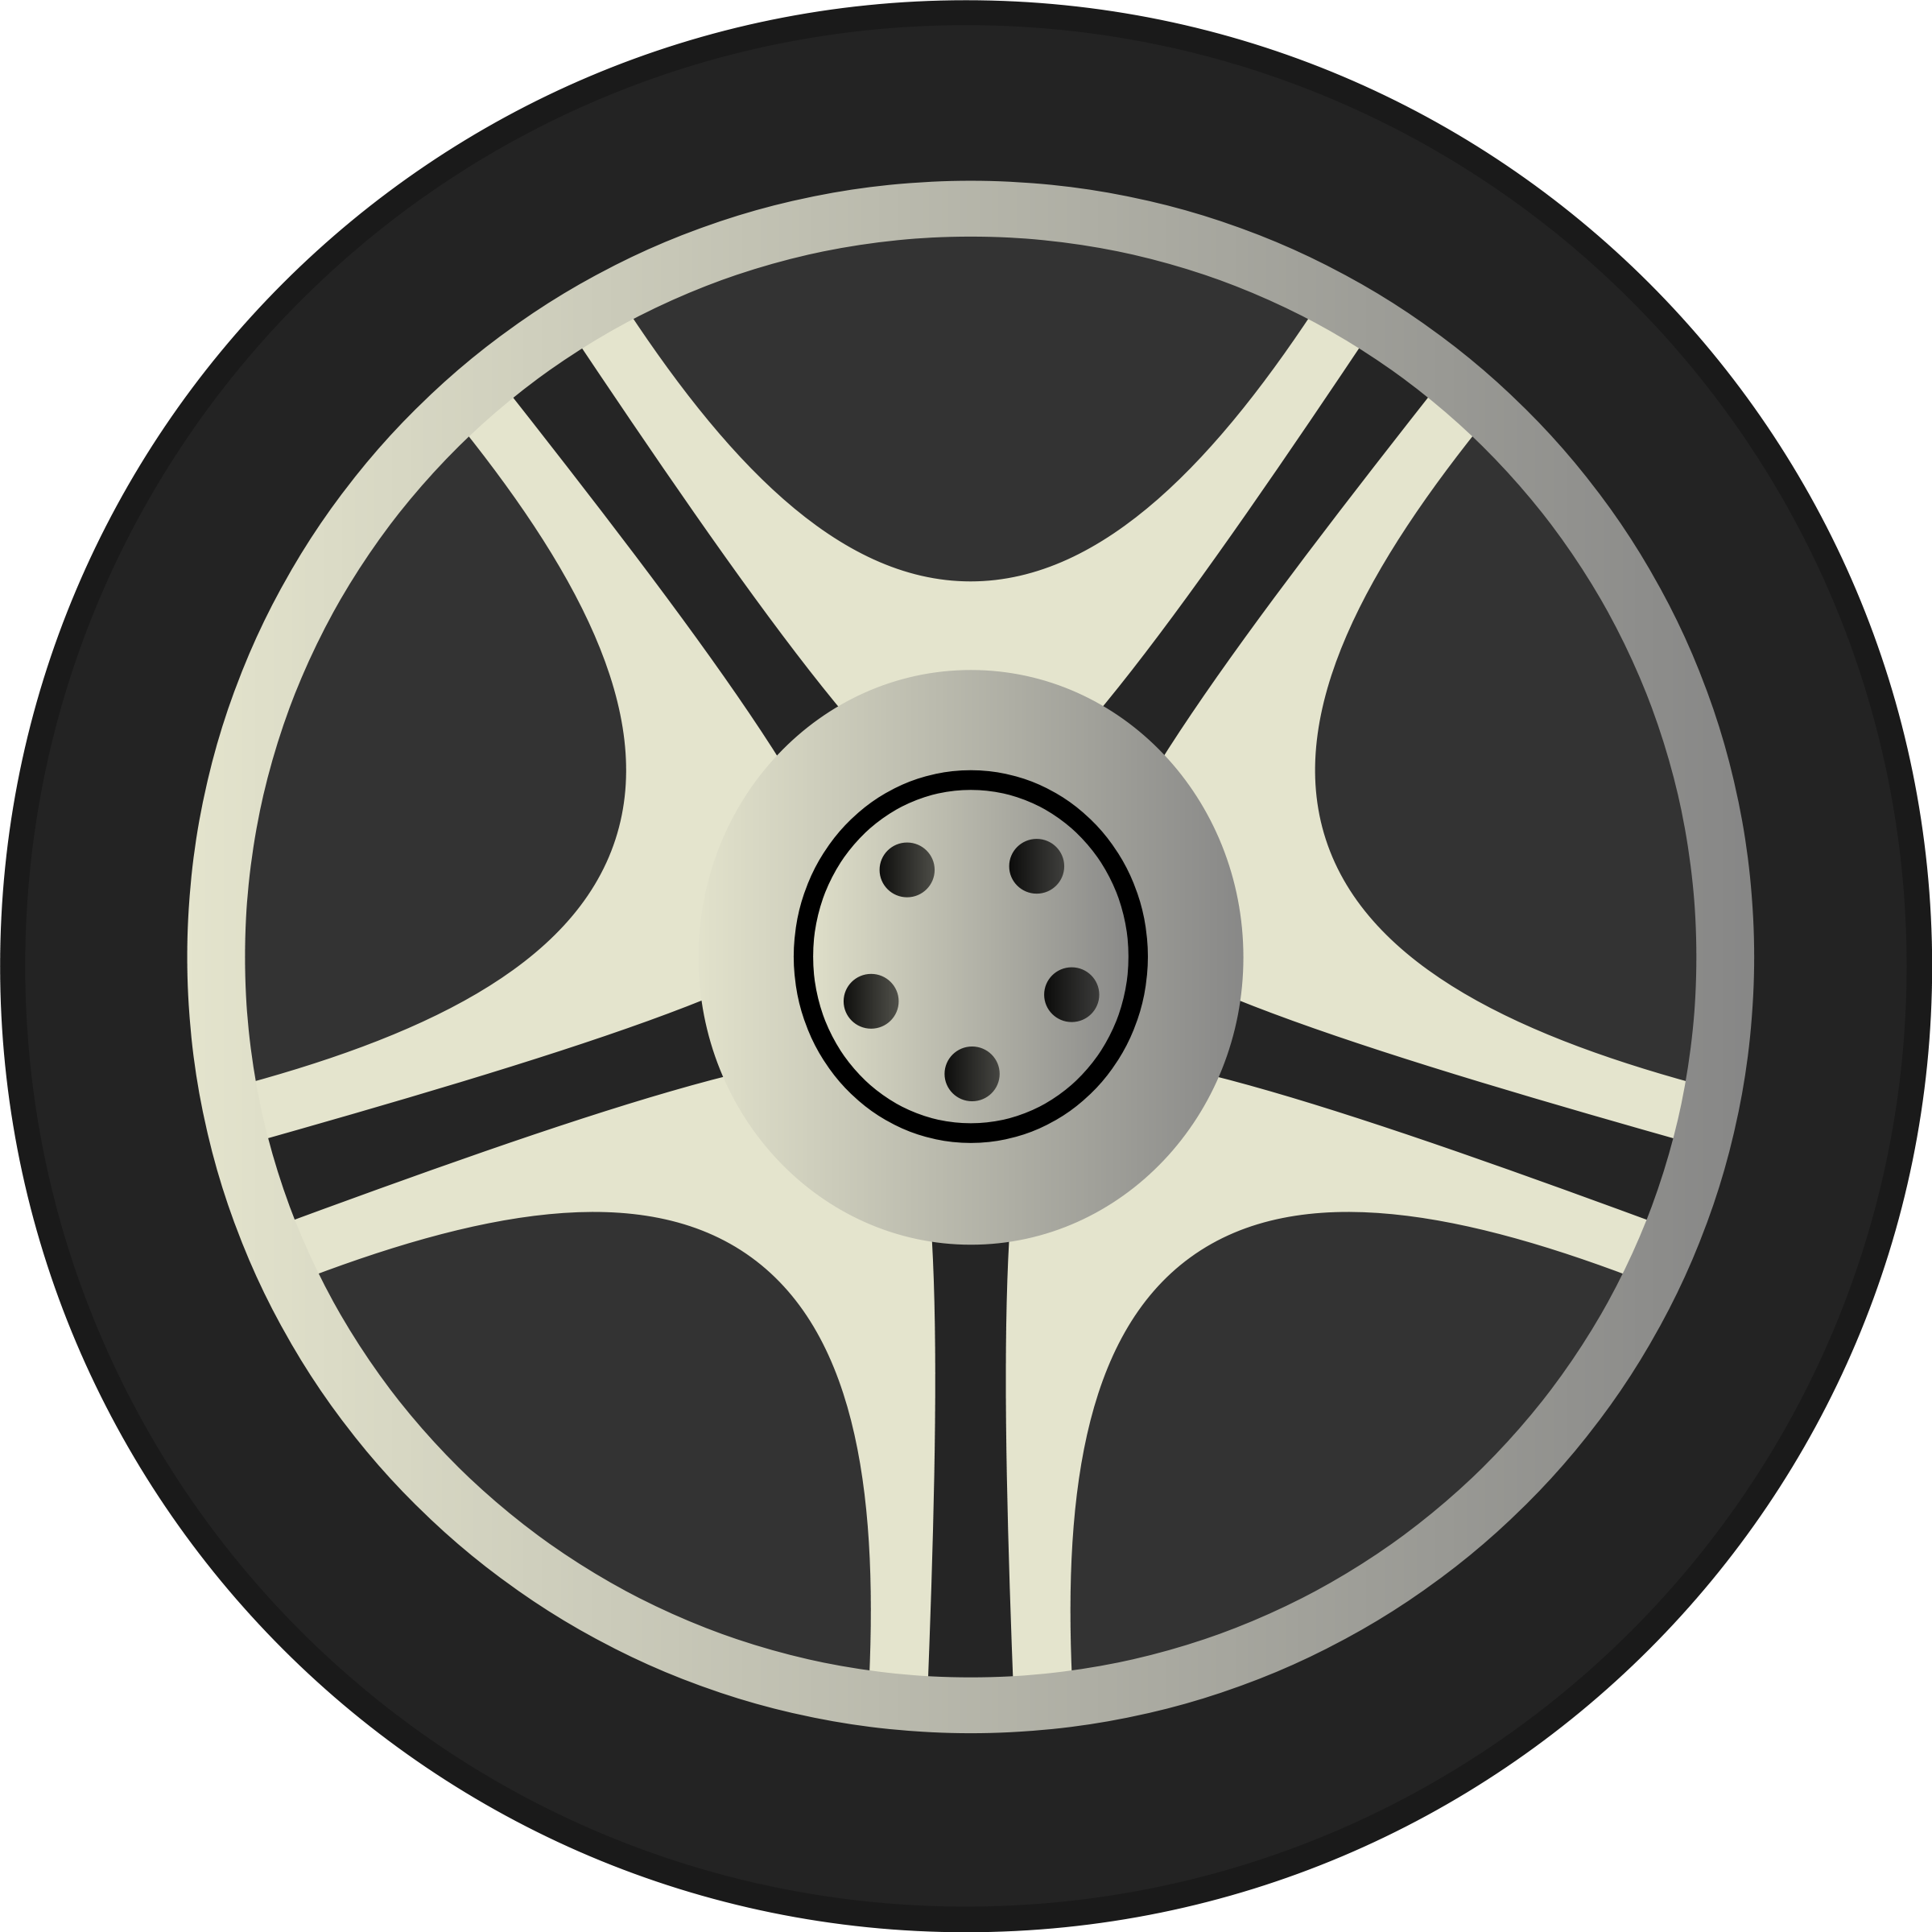 wheel clipart - Wheels Clipart